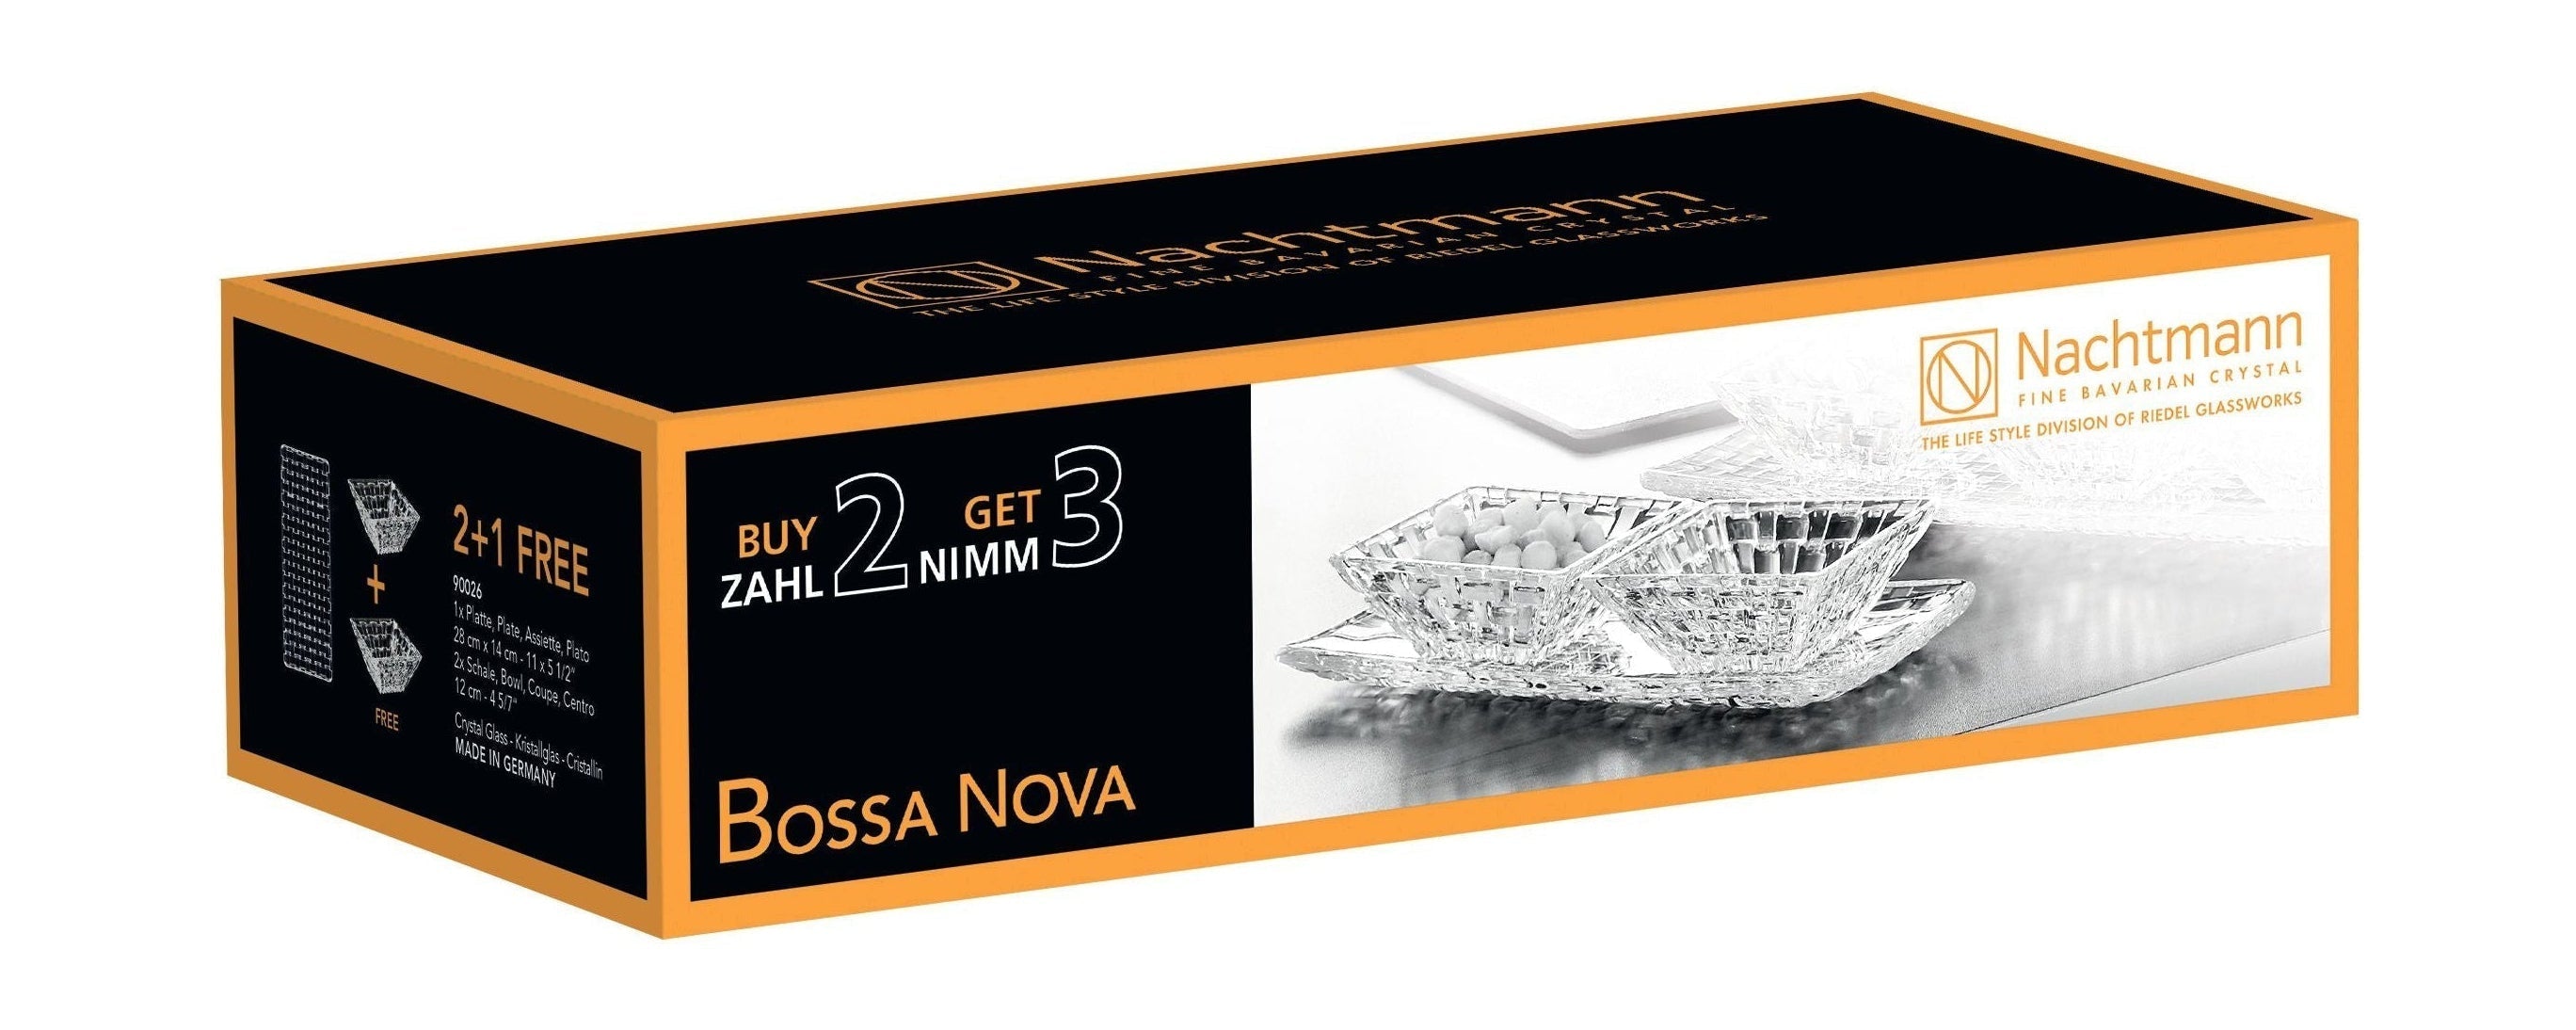 Nachtmann Bossa Nova Crystal Bowls Advantage Set, Set Of 3